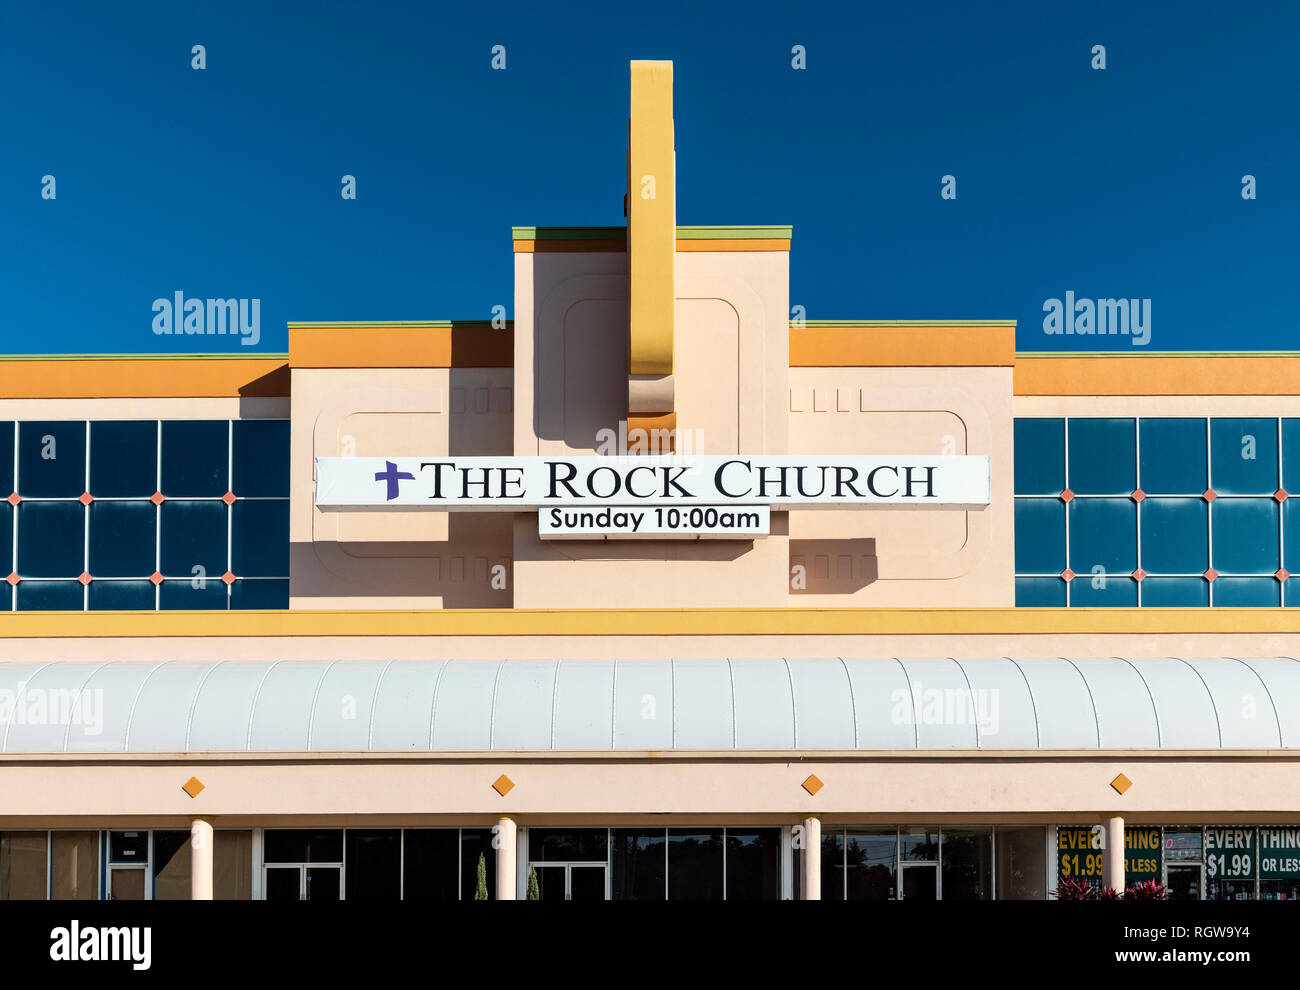 The Rock Church - Kissimmee, FL